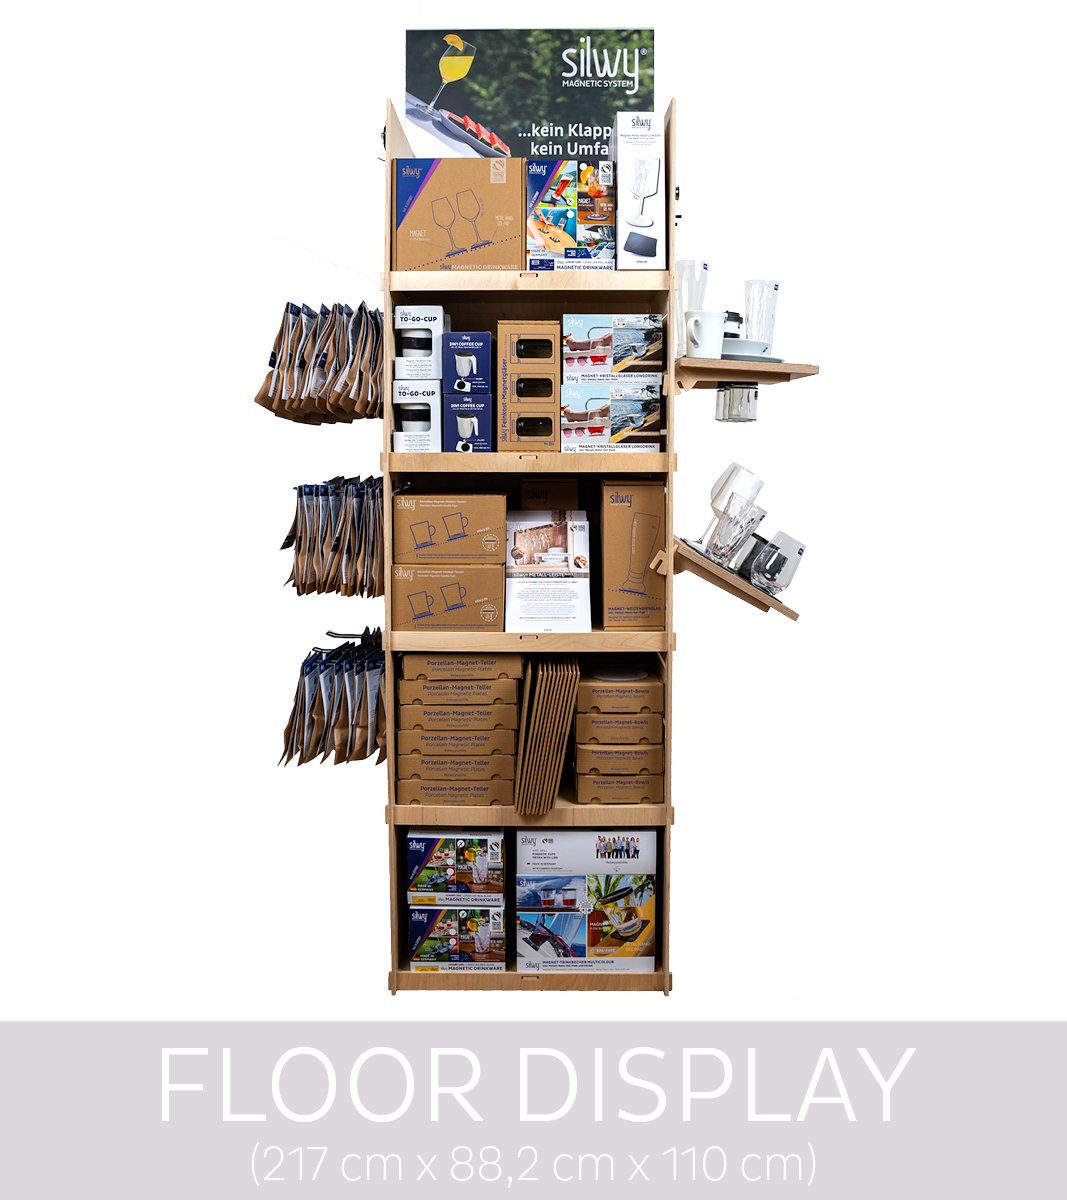 POS-Display-Floor